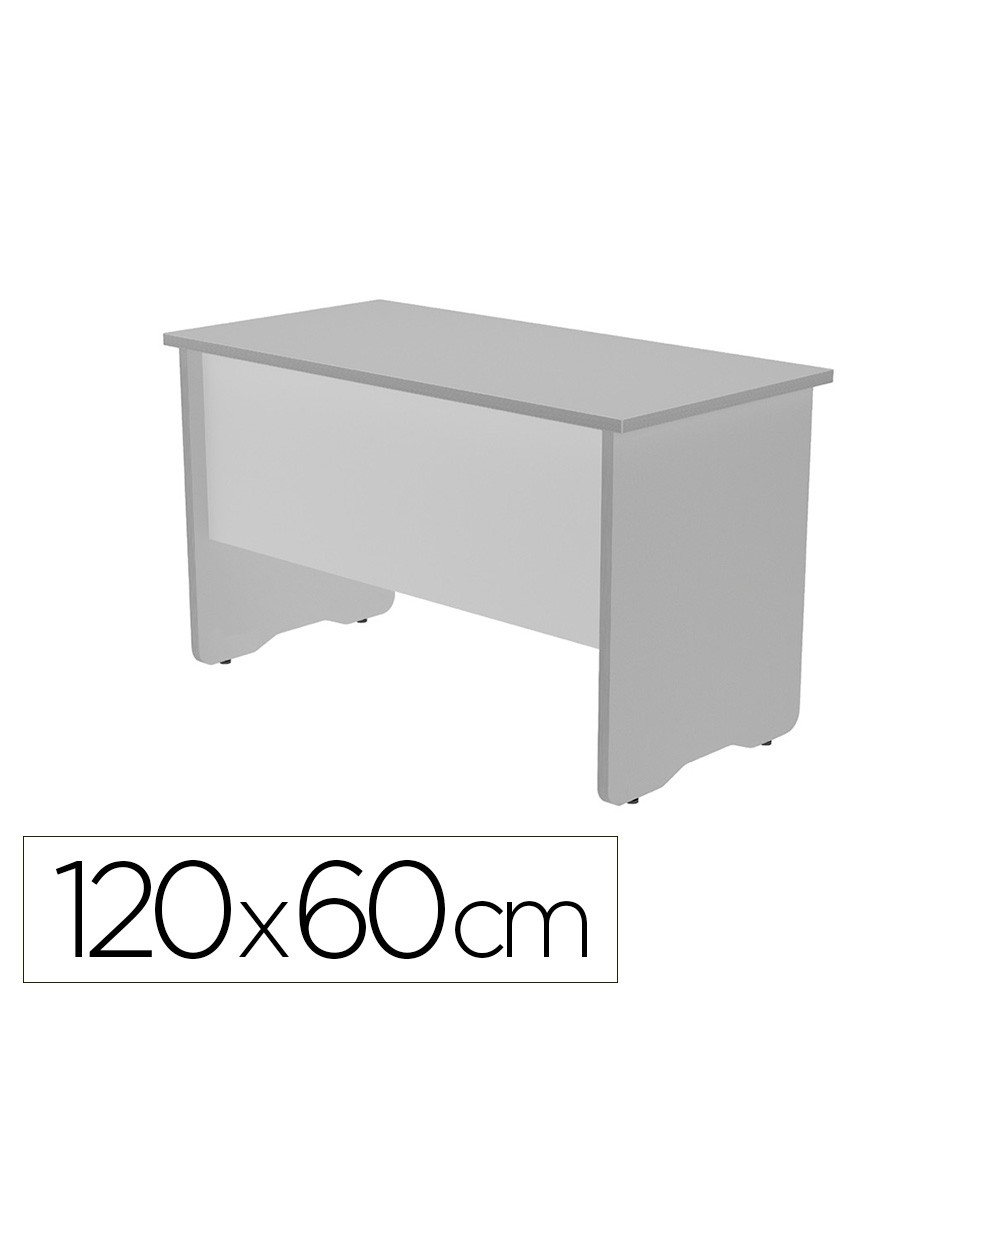 Mesa de oficina rocada work 2000ab02 aluminio gris 120x60 cm